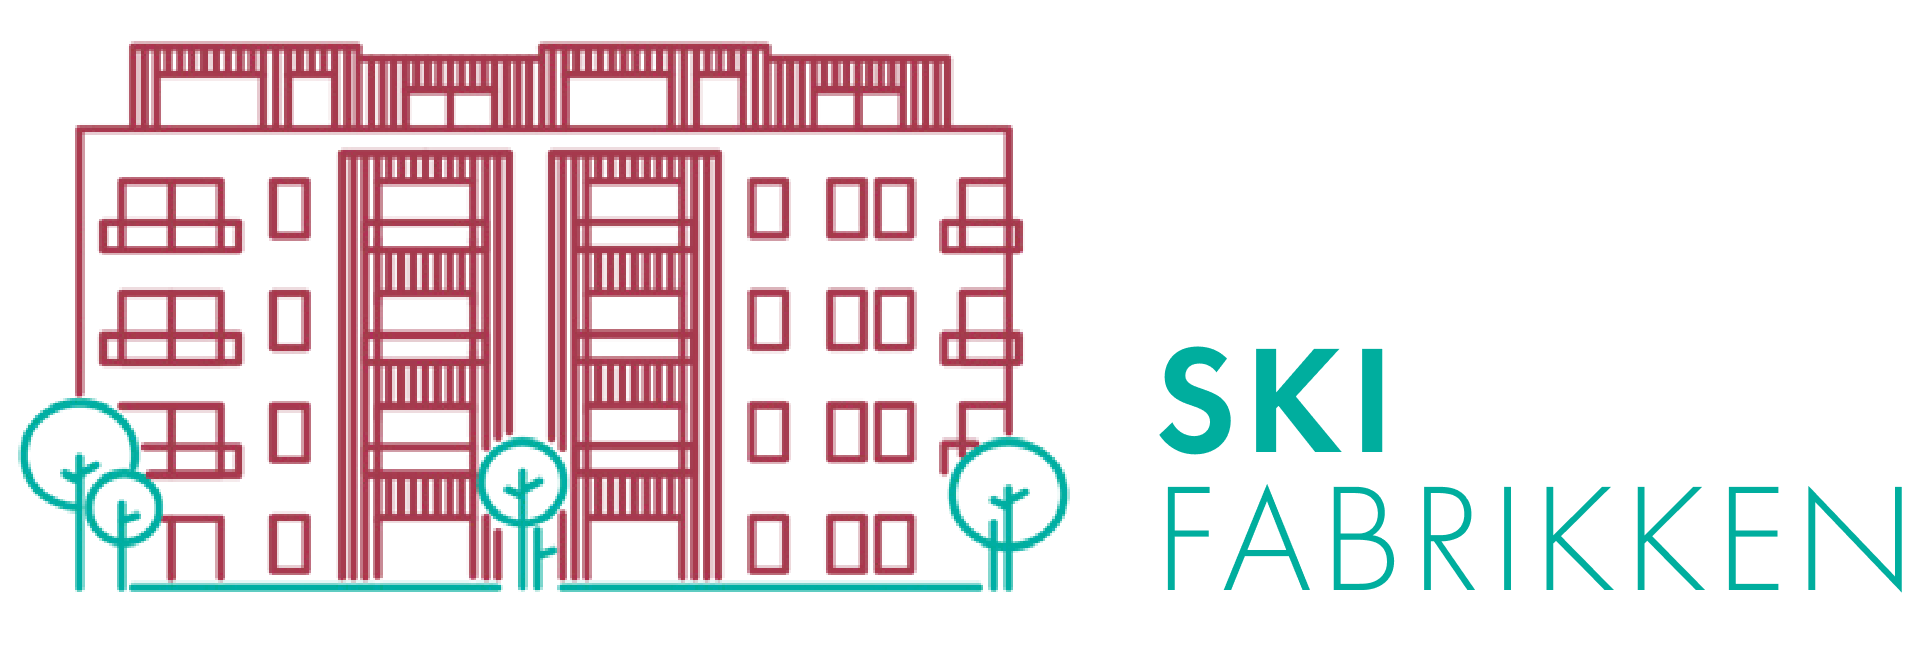 Logoen for Skifabrikken.